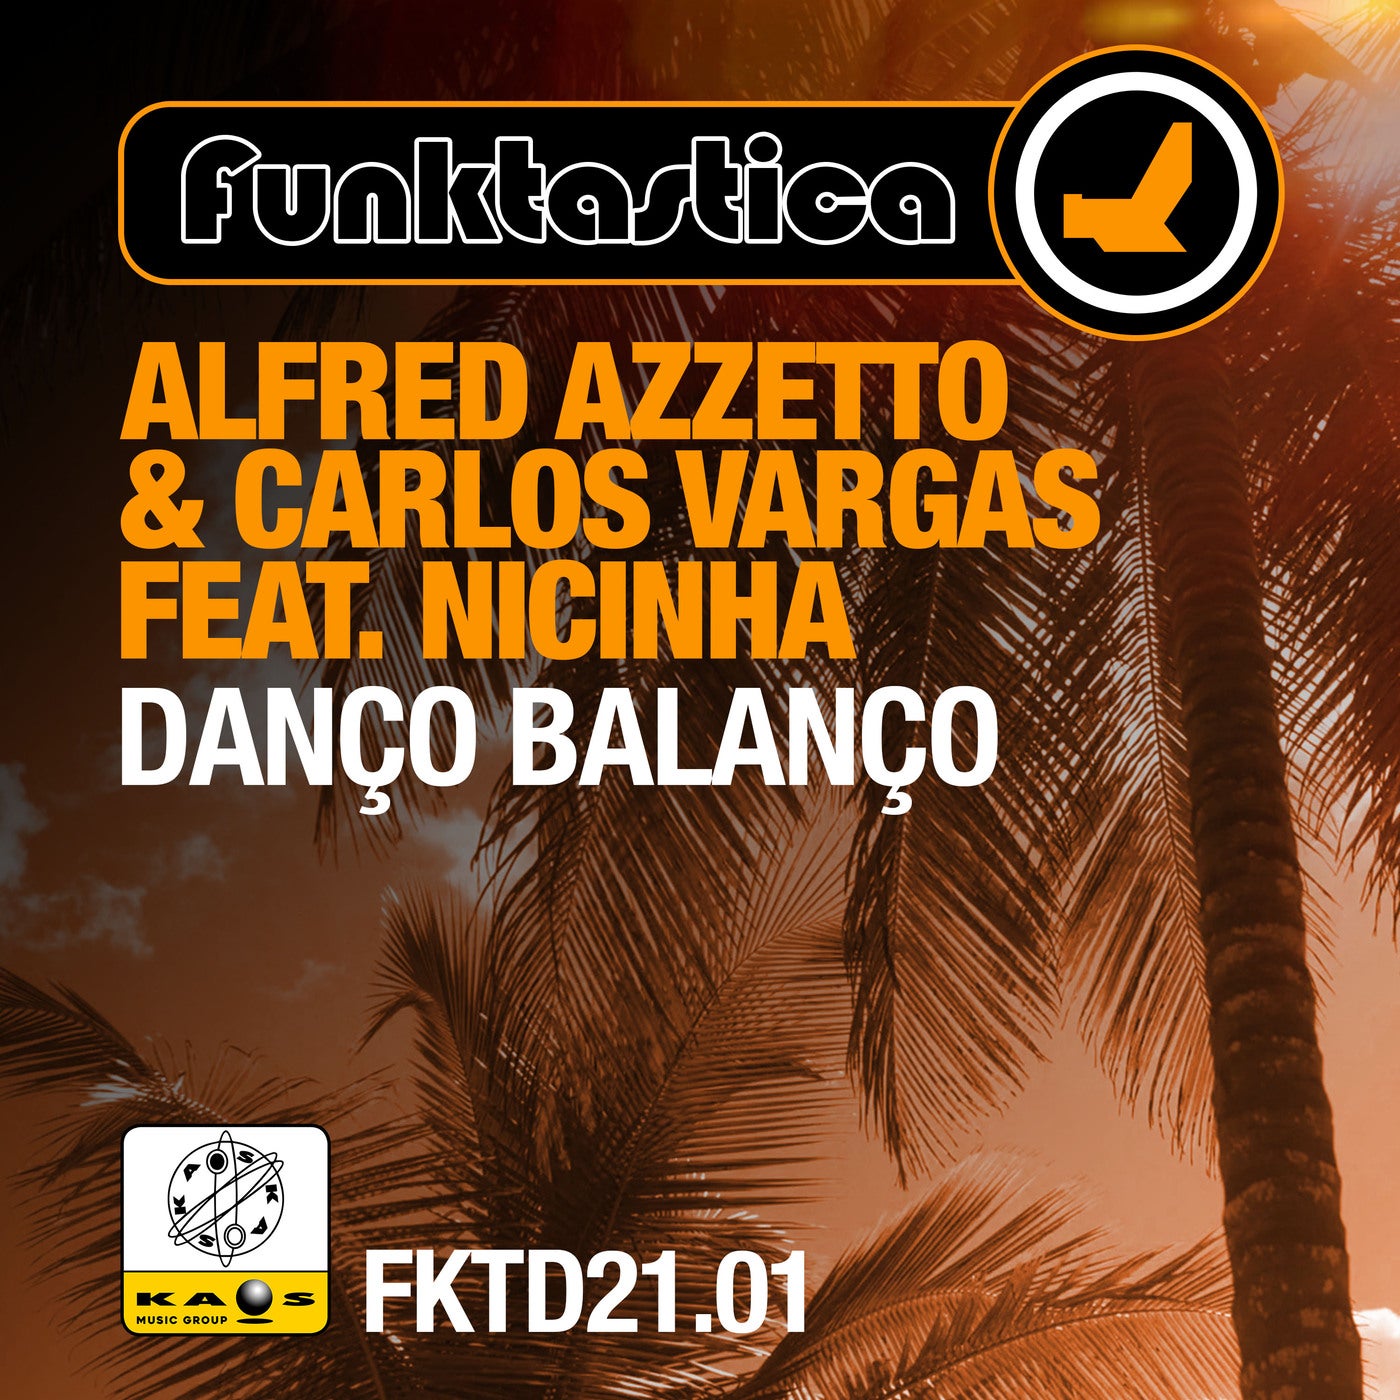 Alfred Azzetto & Carlos Vargas Feat. Nicinha - Danço Balanço